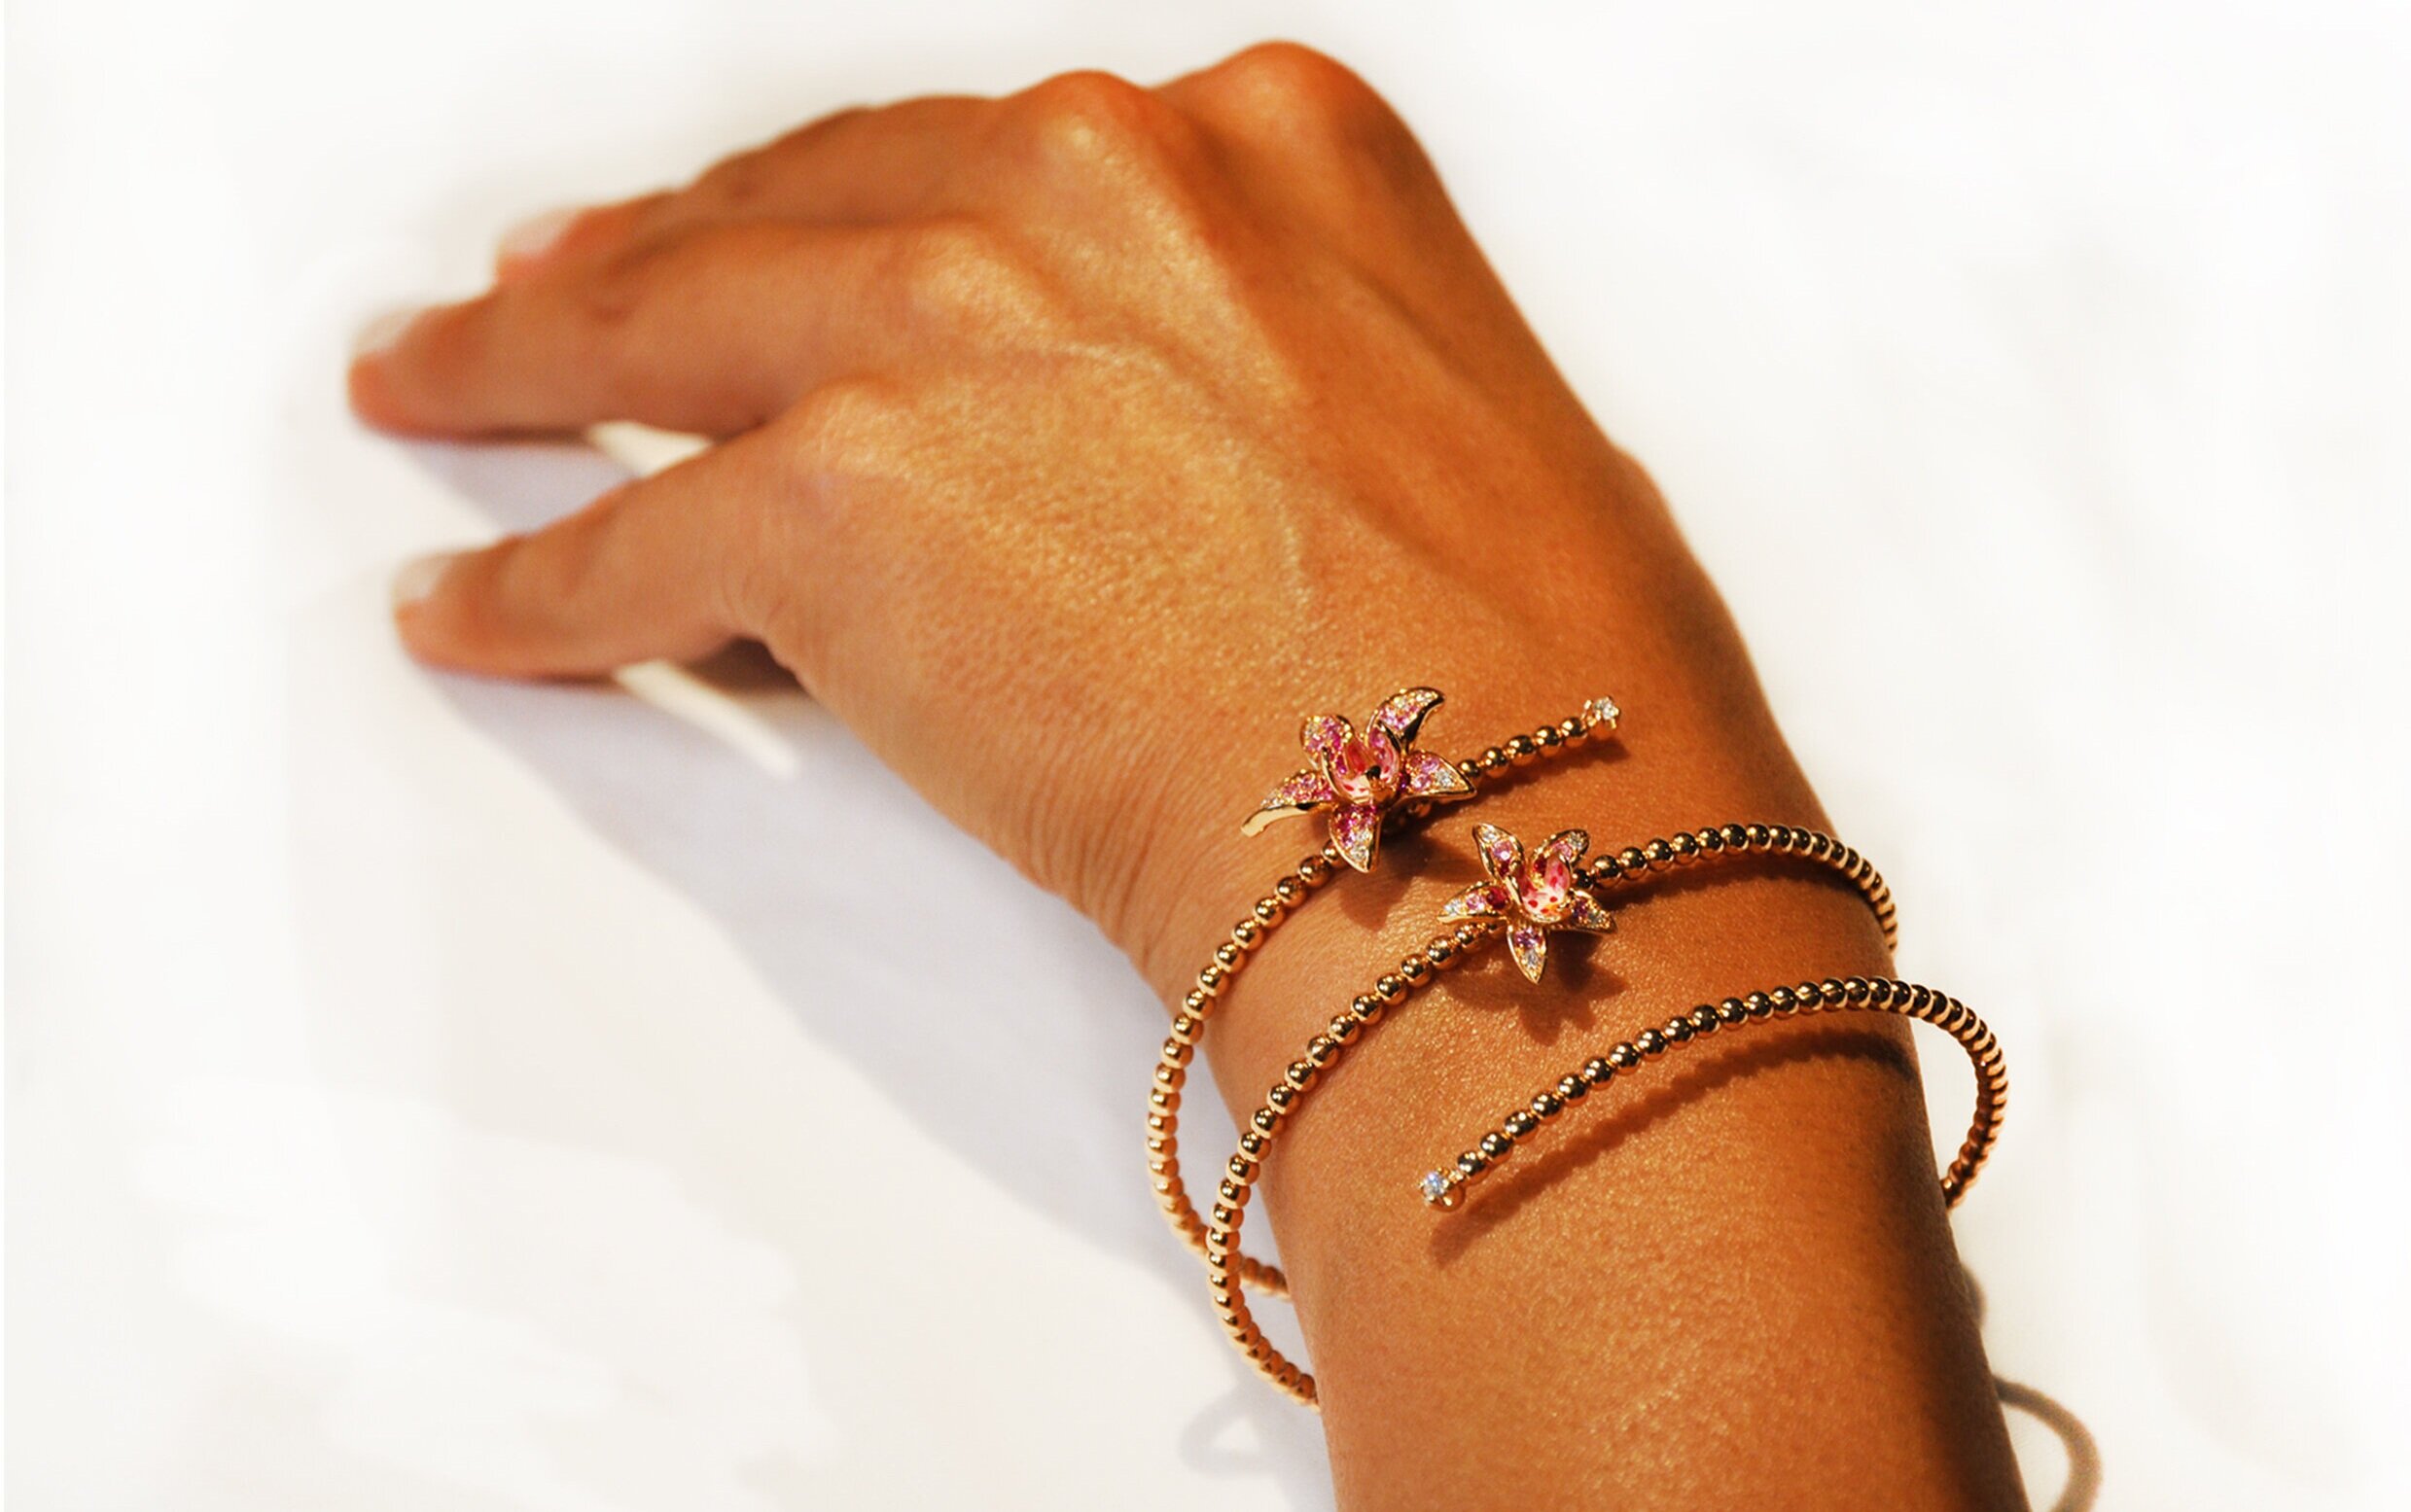 Cartier Pink Sapphire LOVE Bracelet - 18K Rose Gold Cuff